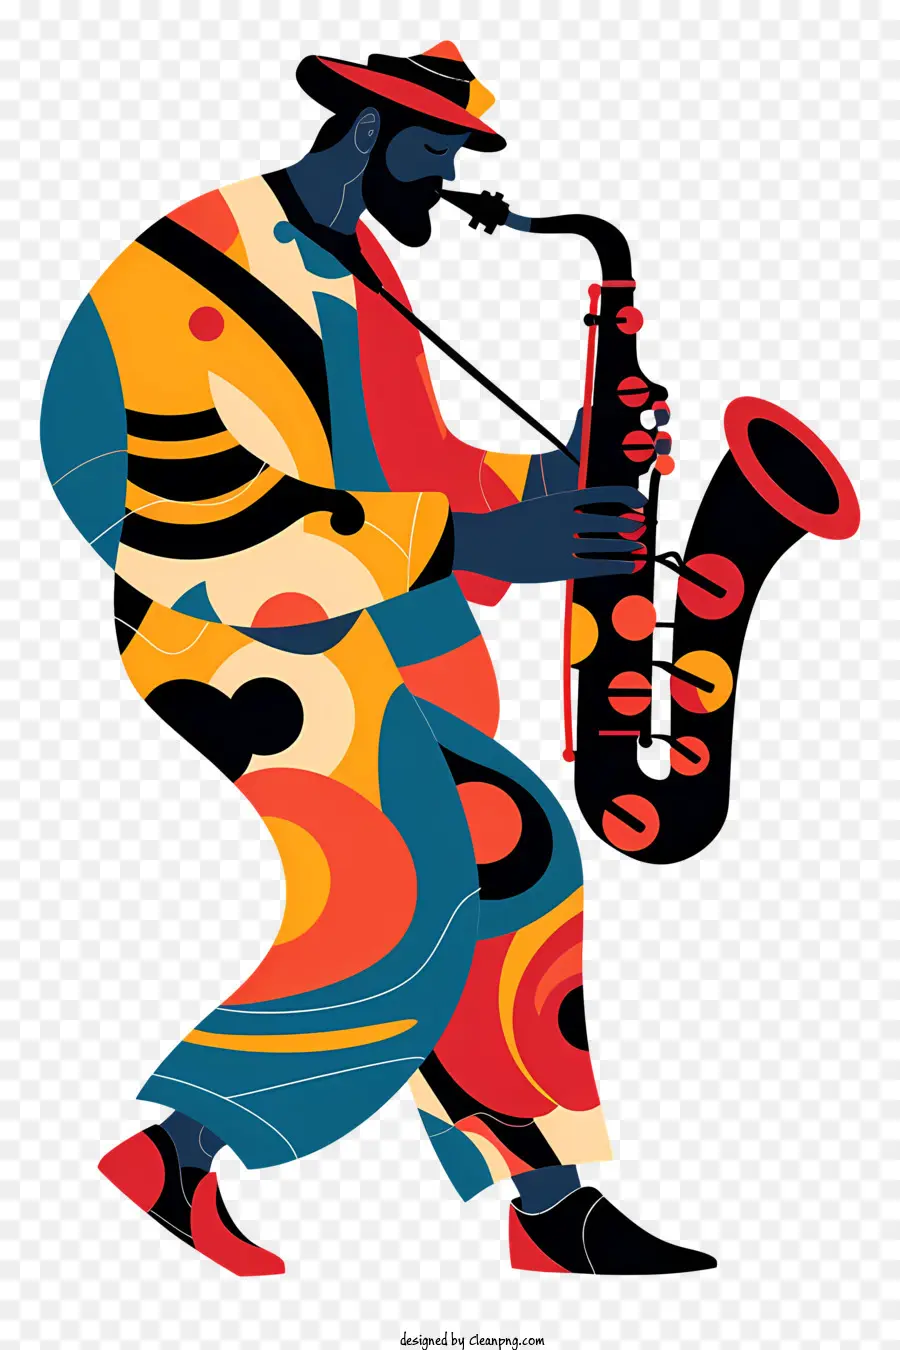 Homem Jogando Saxofone，Saxofone PNG